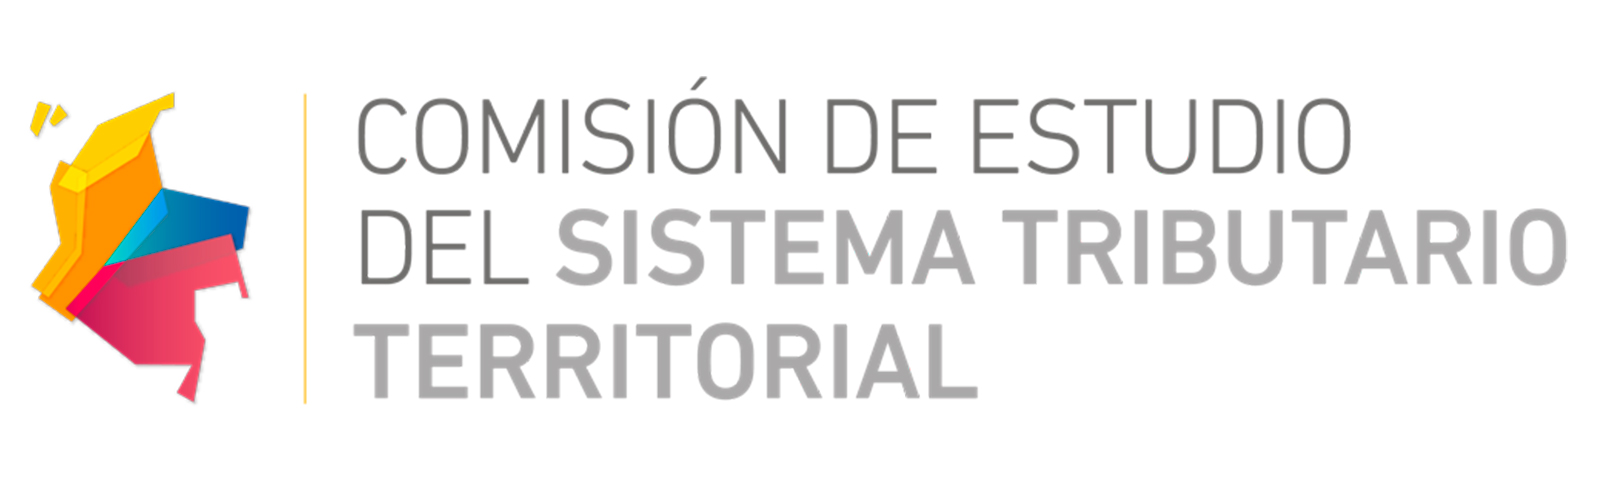 Comisión de Estudio del Sistema Tributario Territorial